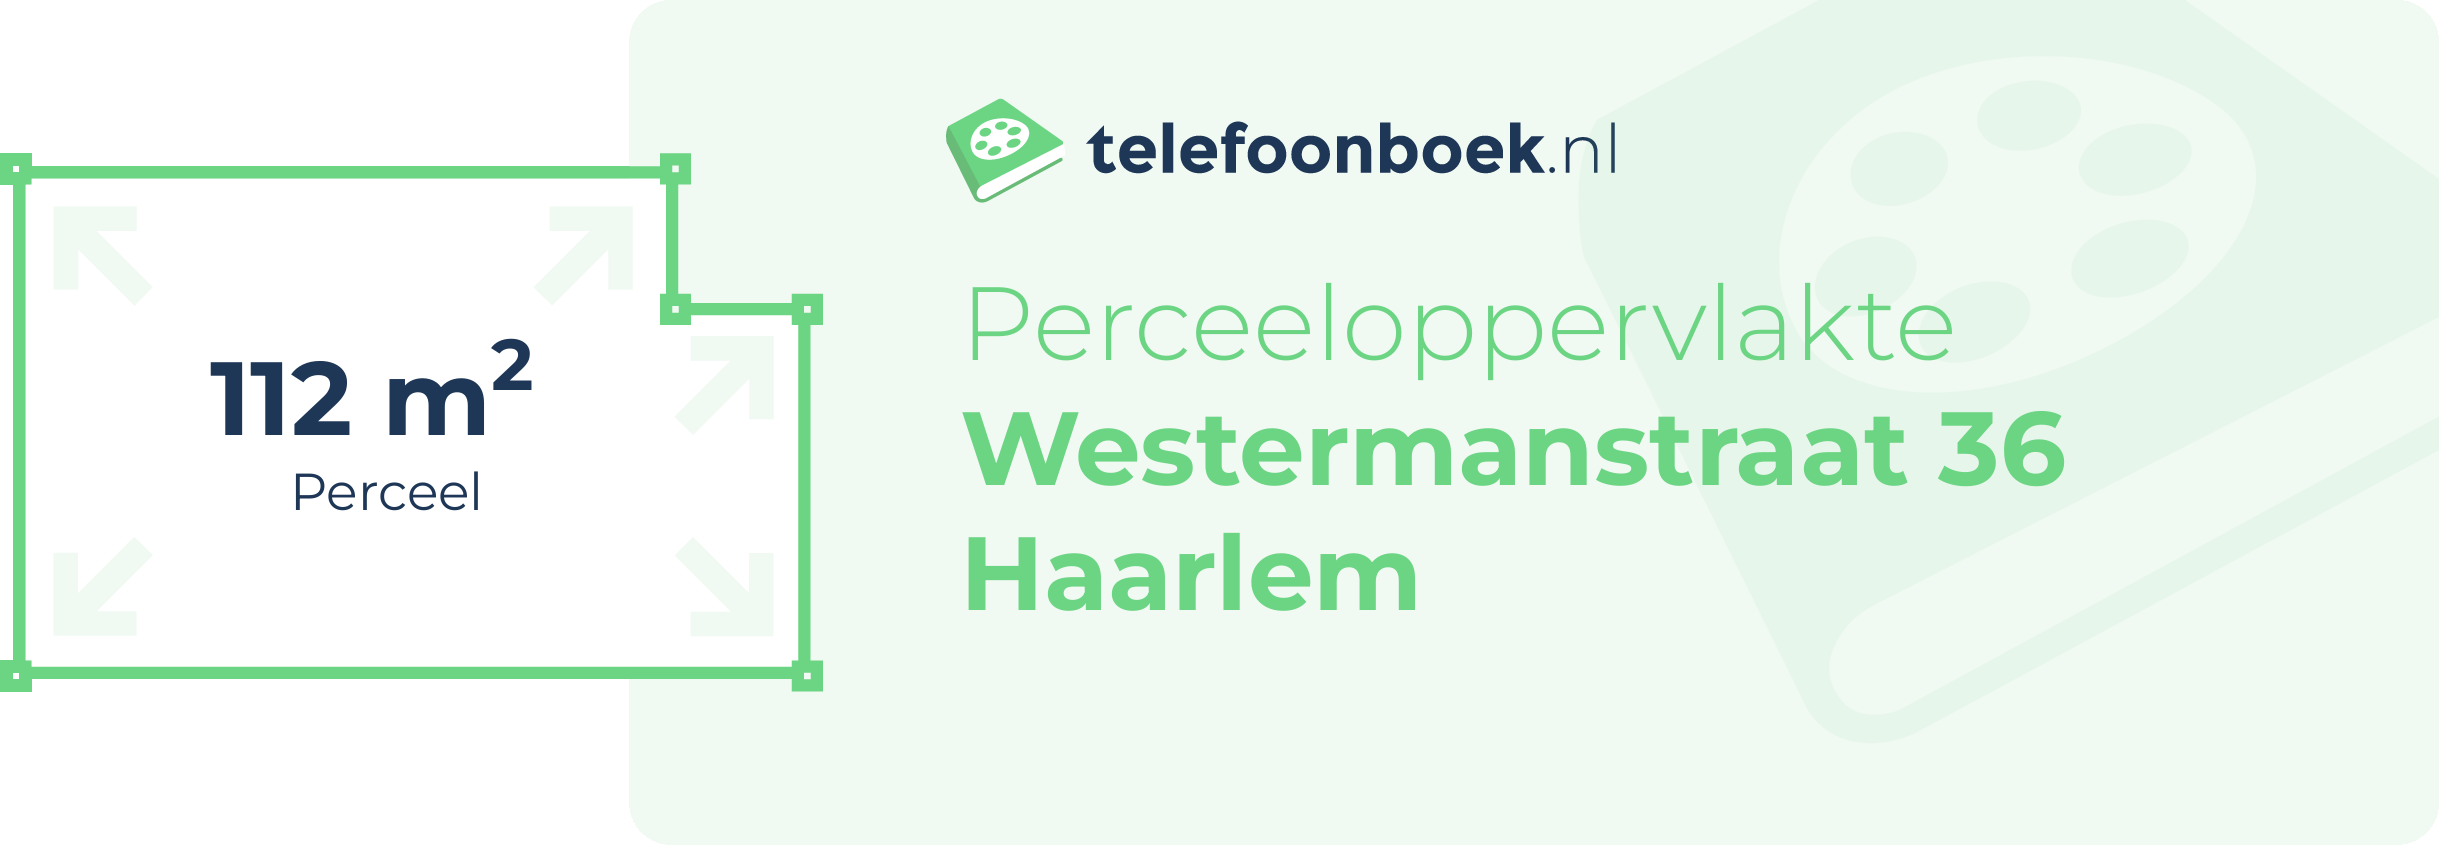 Perceeloppervlakte Westermanstraat 36 Haarlem